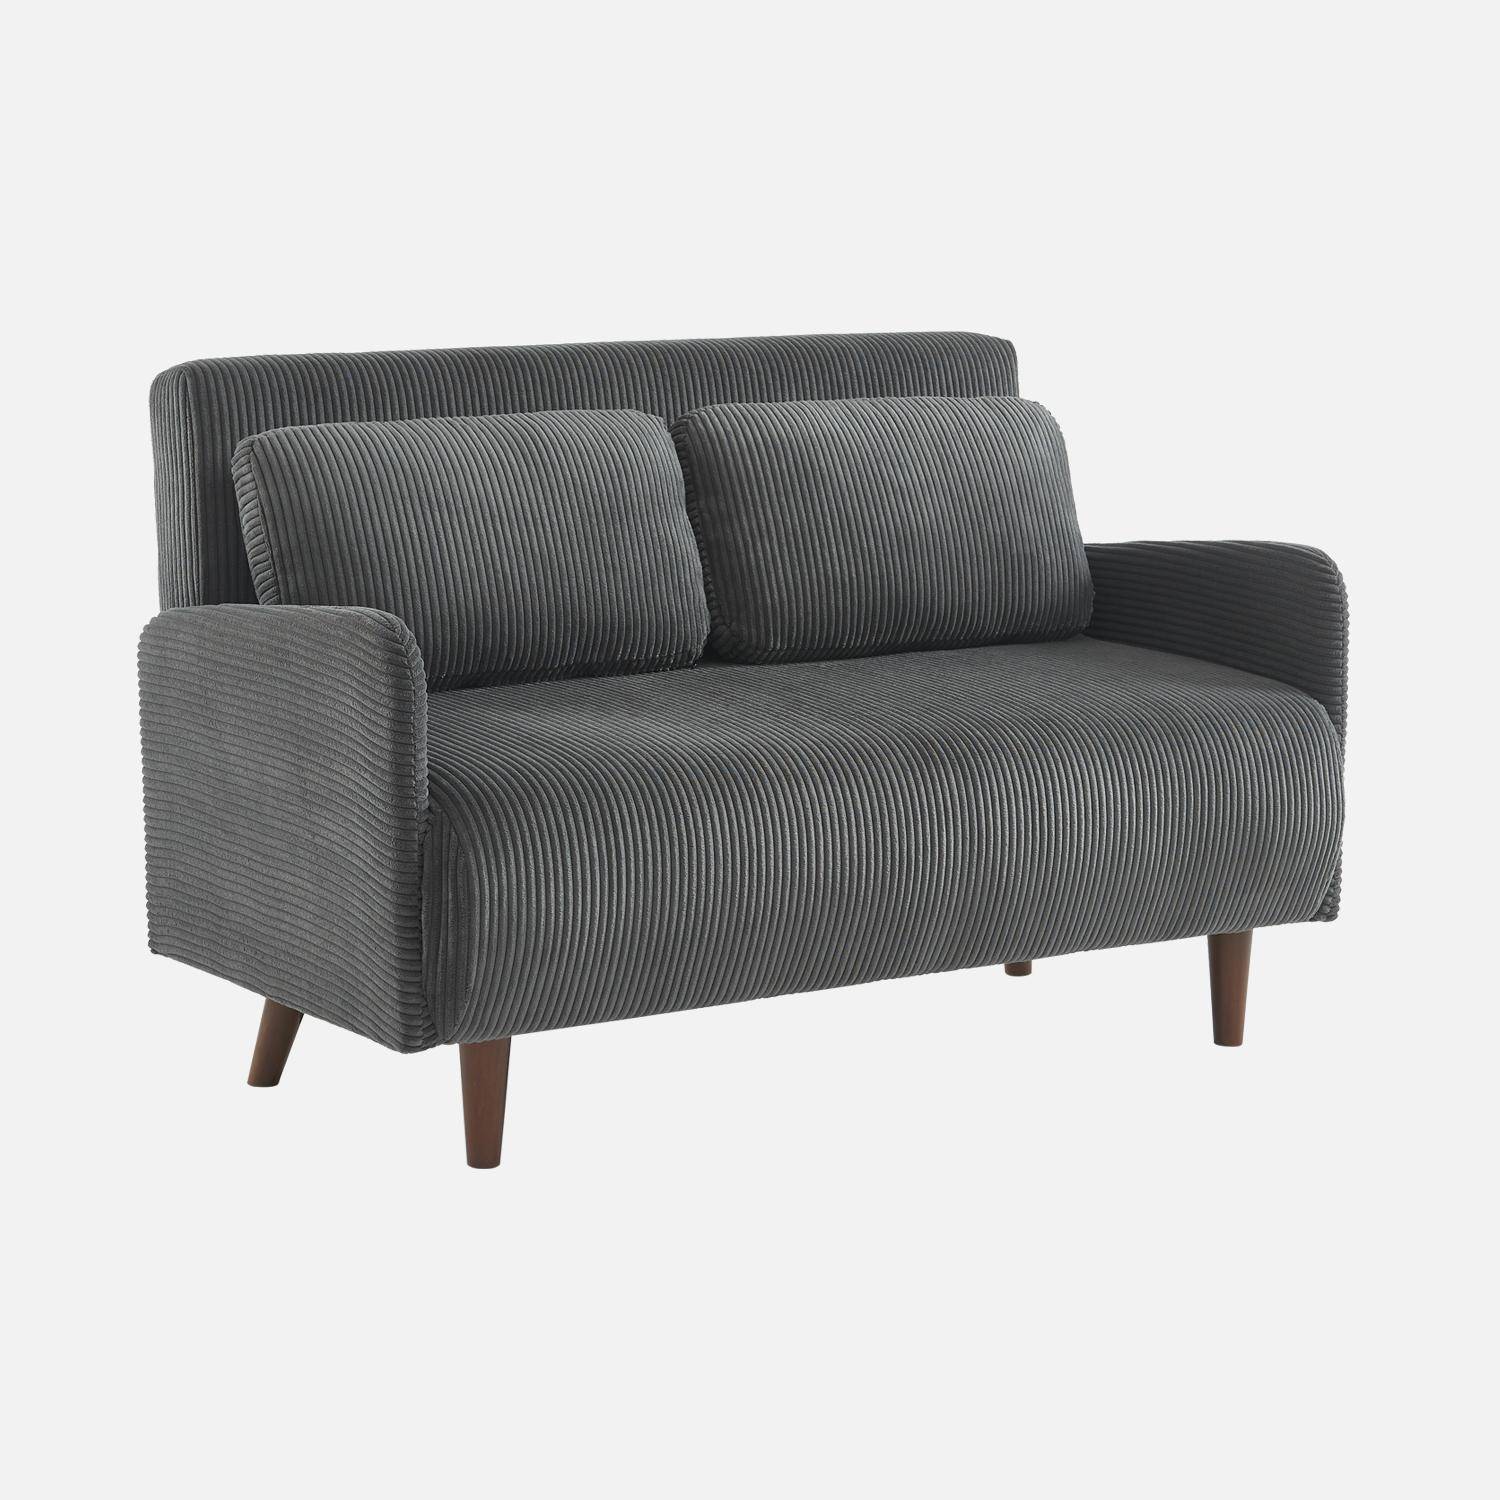 Skandinavisches 2-Sitzer-Sofa mit dunkelgrauem Cordbezug, Holzfüßen und verstellbarer Rückenlehne - Panam,sweeek,Photo3